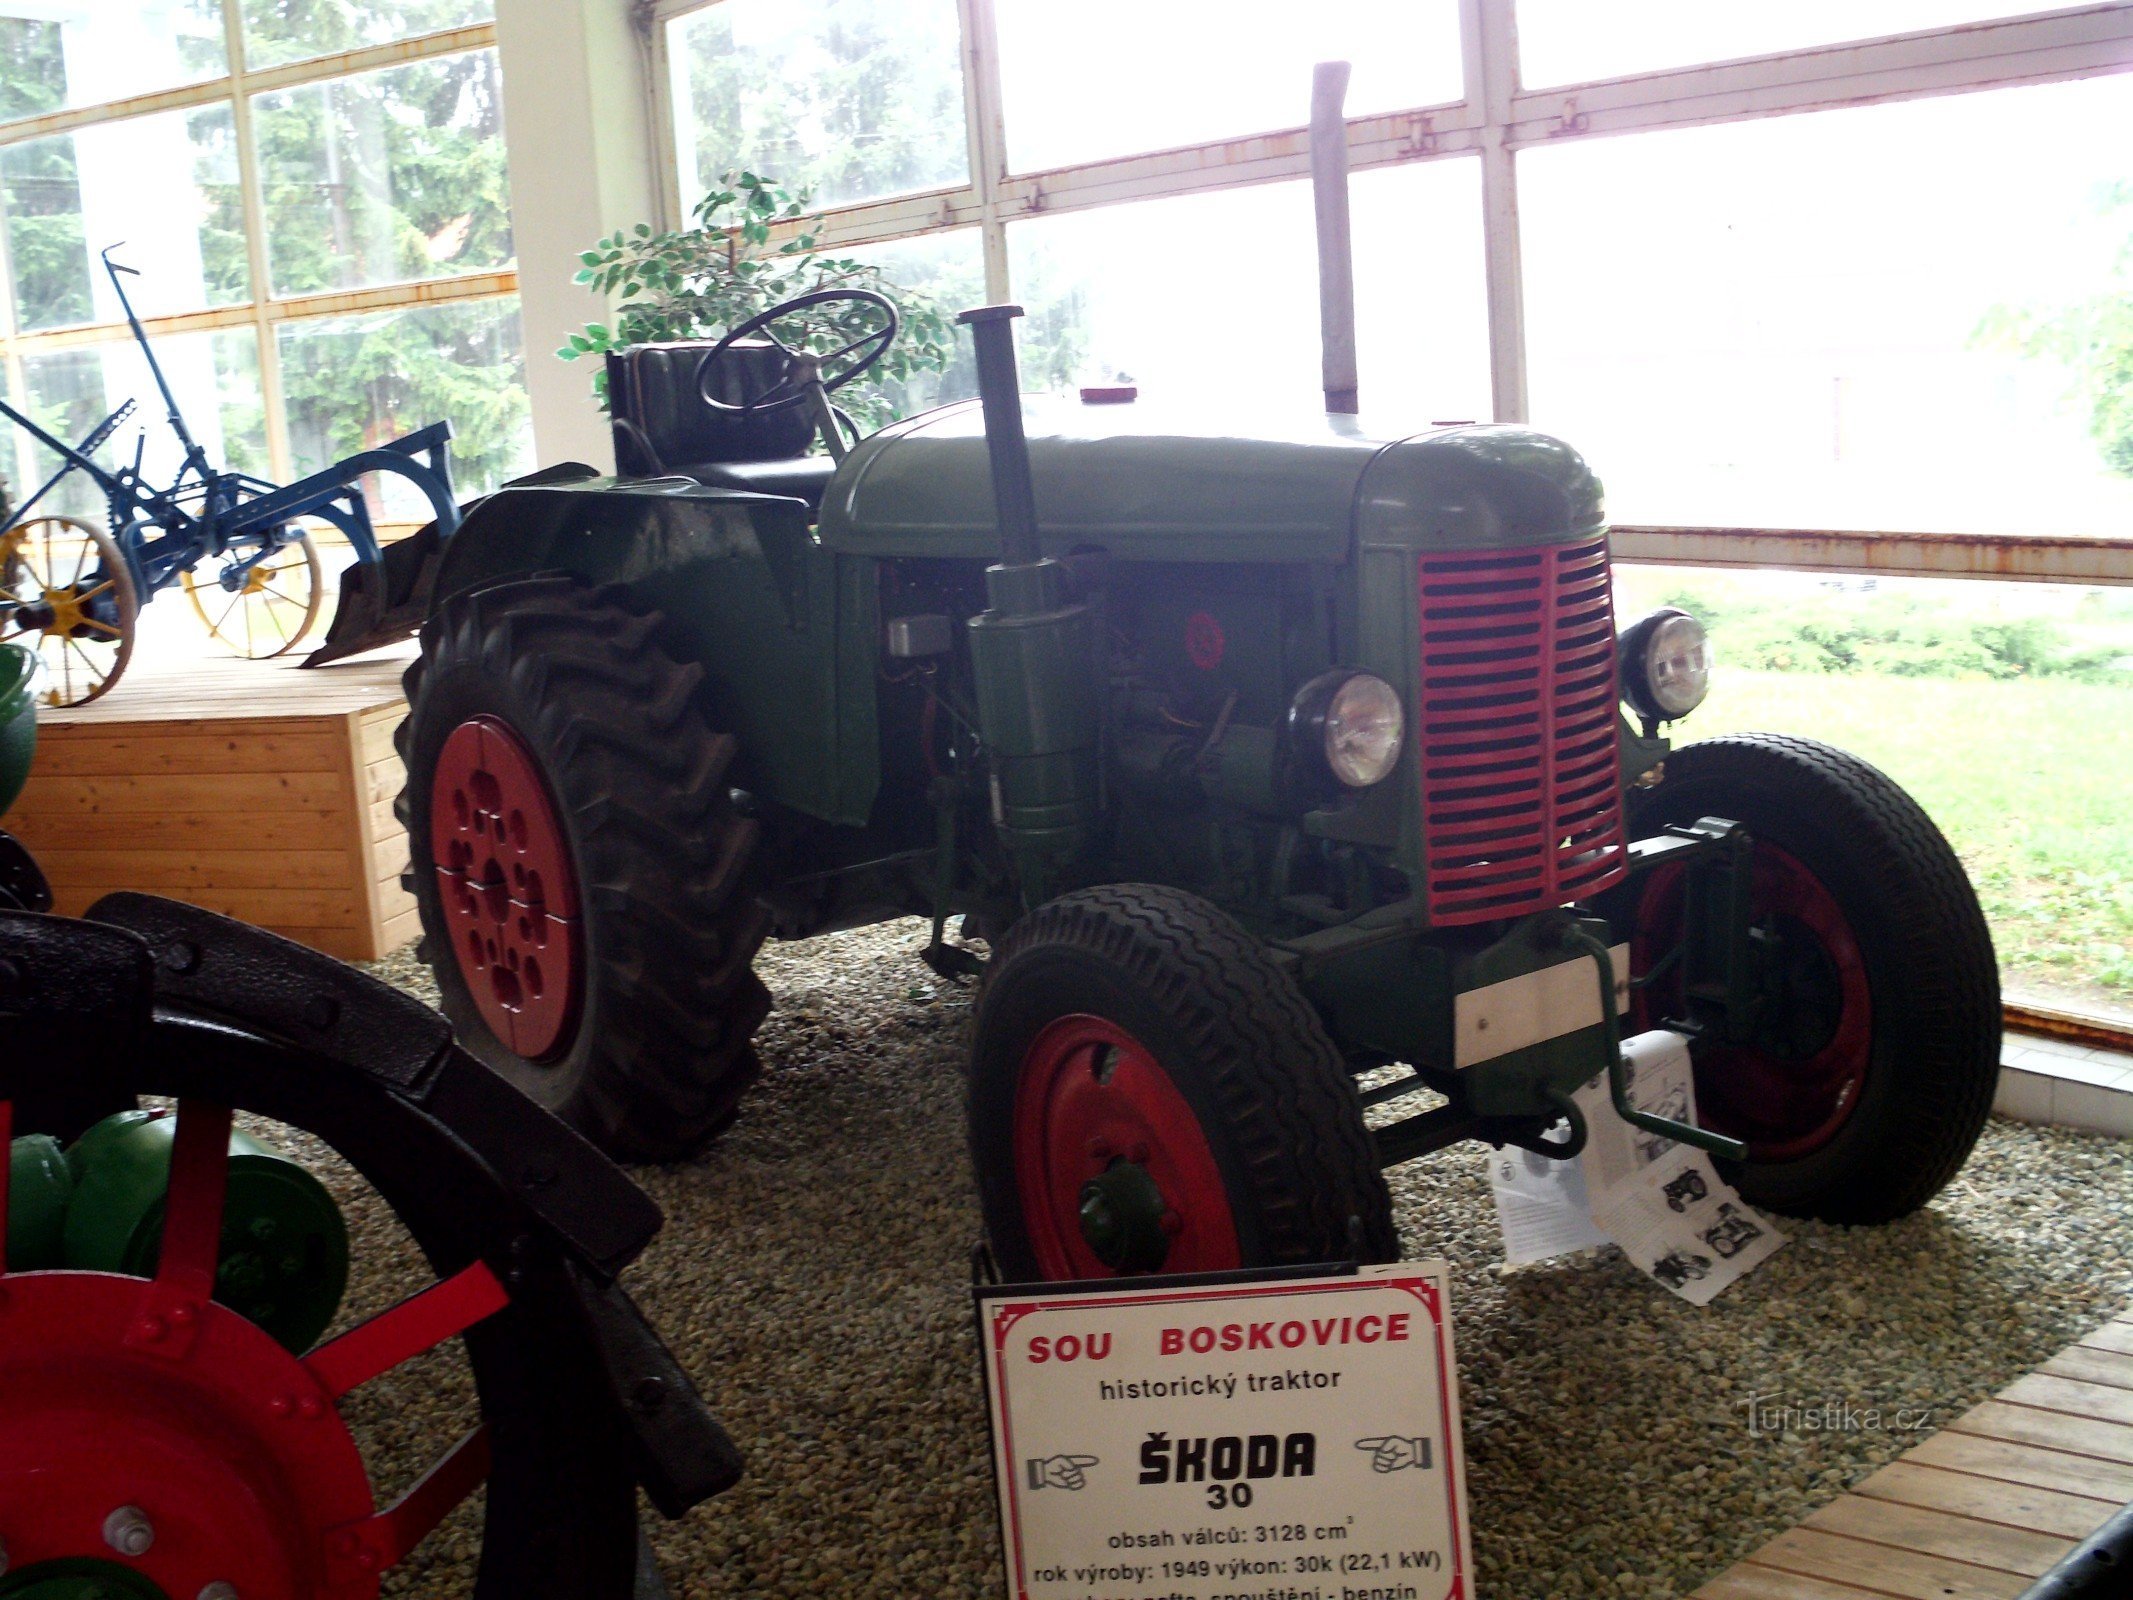 Трактор Škoda 30 сыграл важную роль во время коллективизации сельского хозяйства после Второй мировой войны. мировая война.